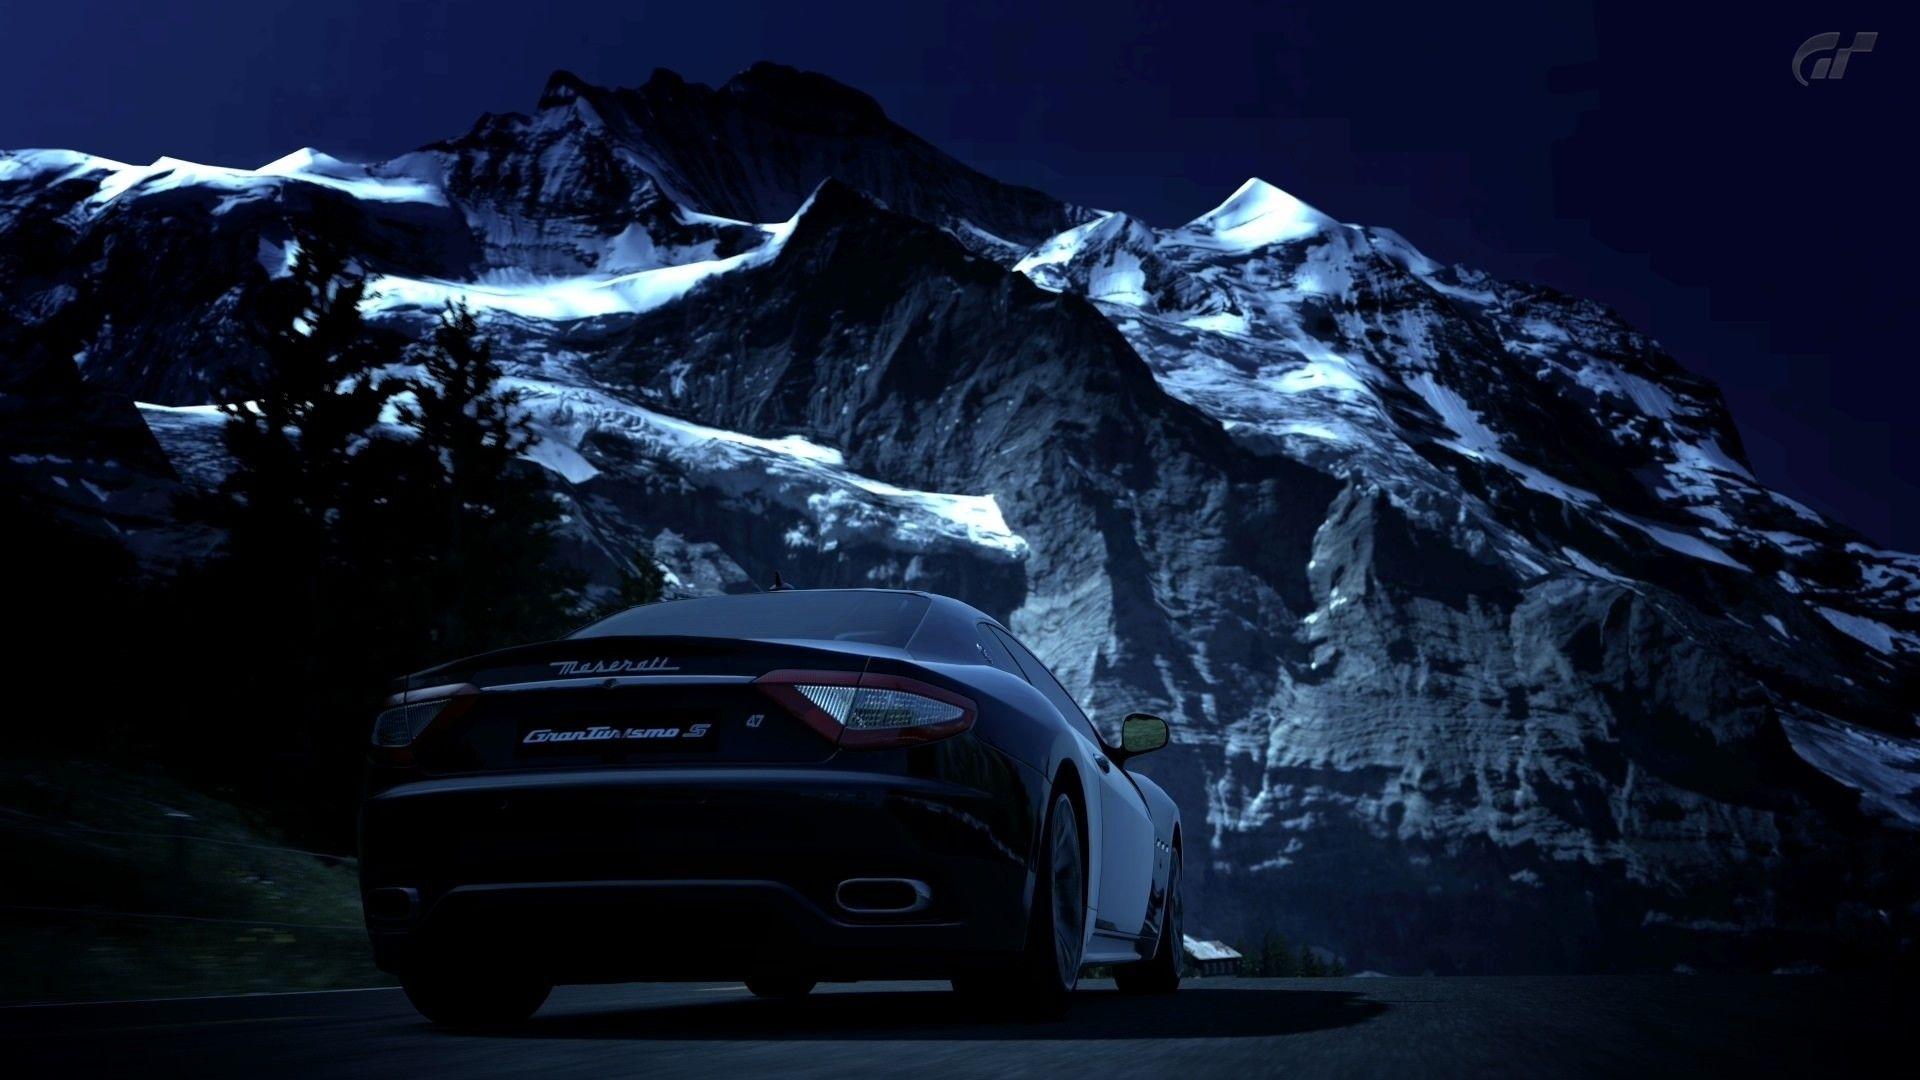 Maserati GranTurismo at the Mountains widescreen wallpaper. Wide